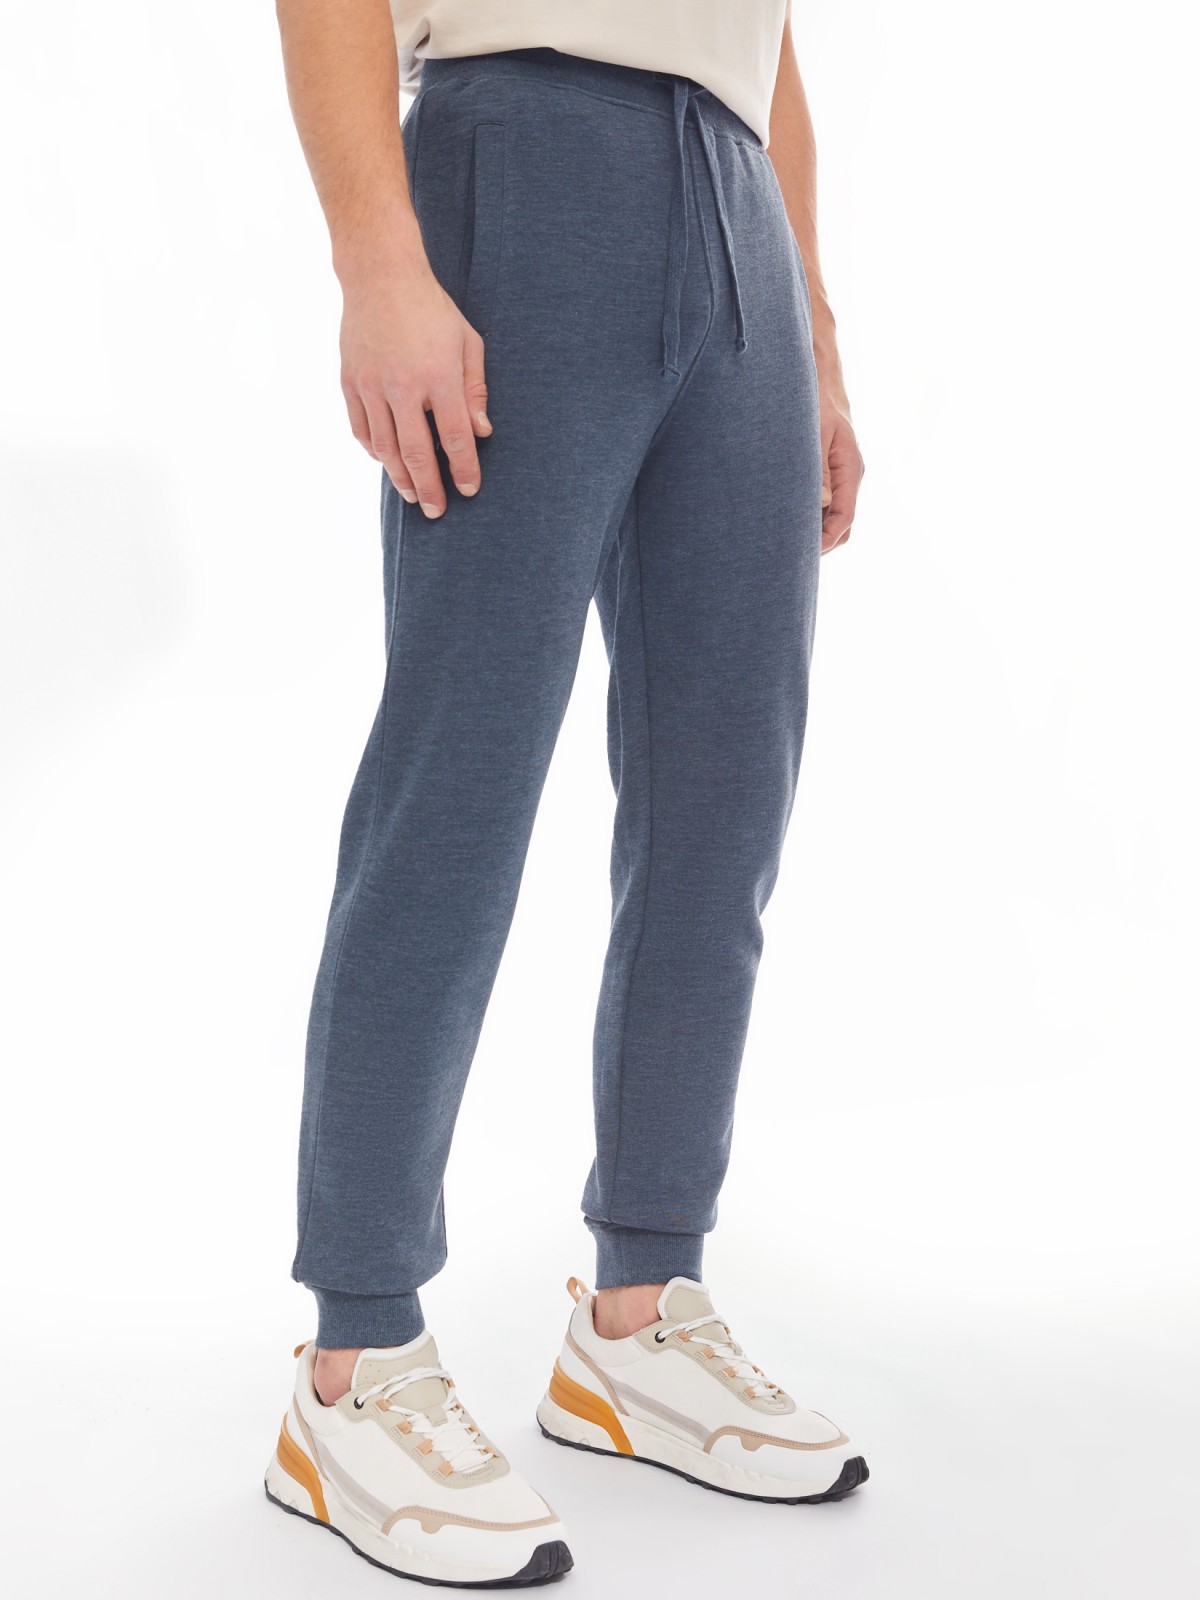 Трикотажные брюки-джоггеры в спортивном стиле zolla 014137675082, цвет темно-бирюзовый, размер M - фото 3